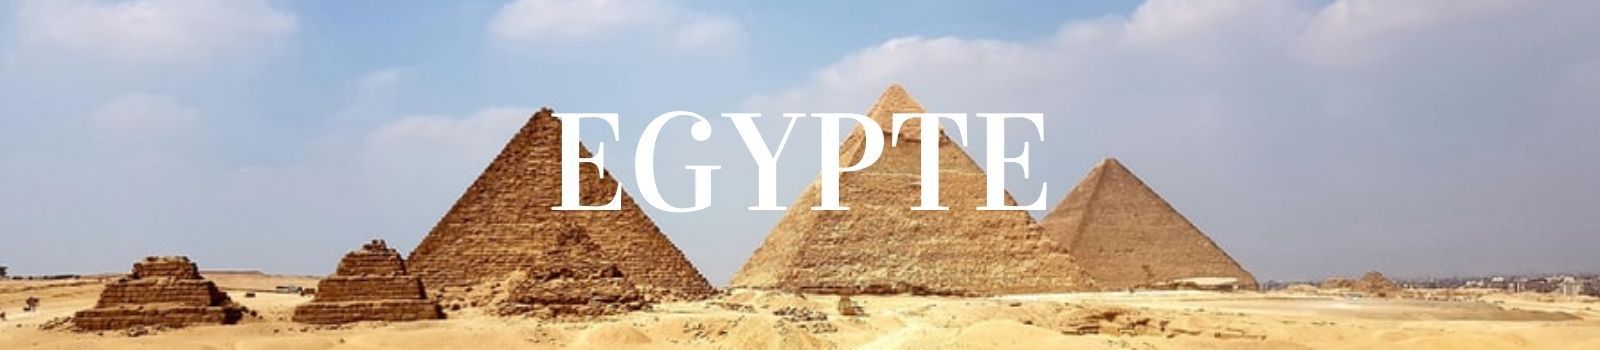 Reizen naar Egypte